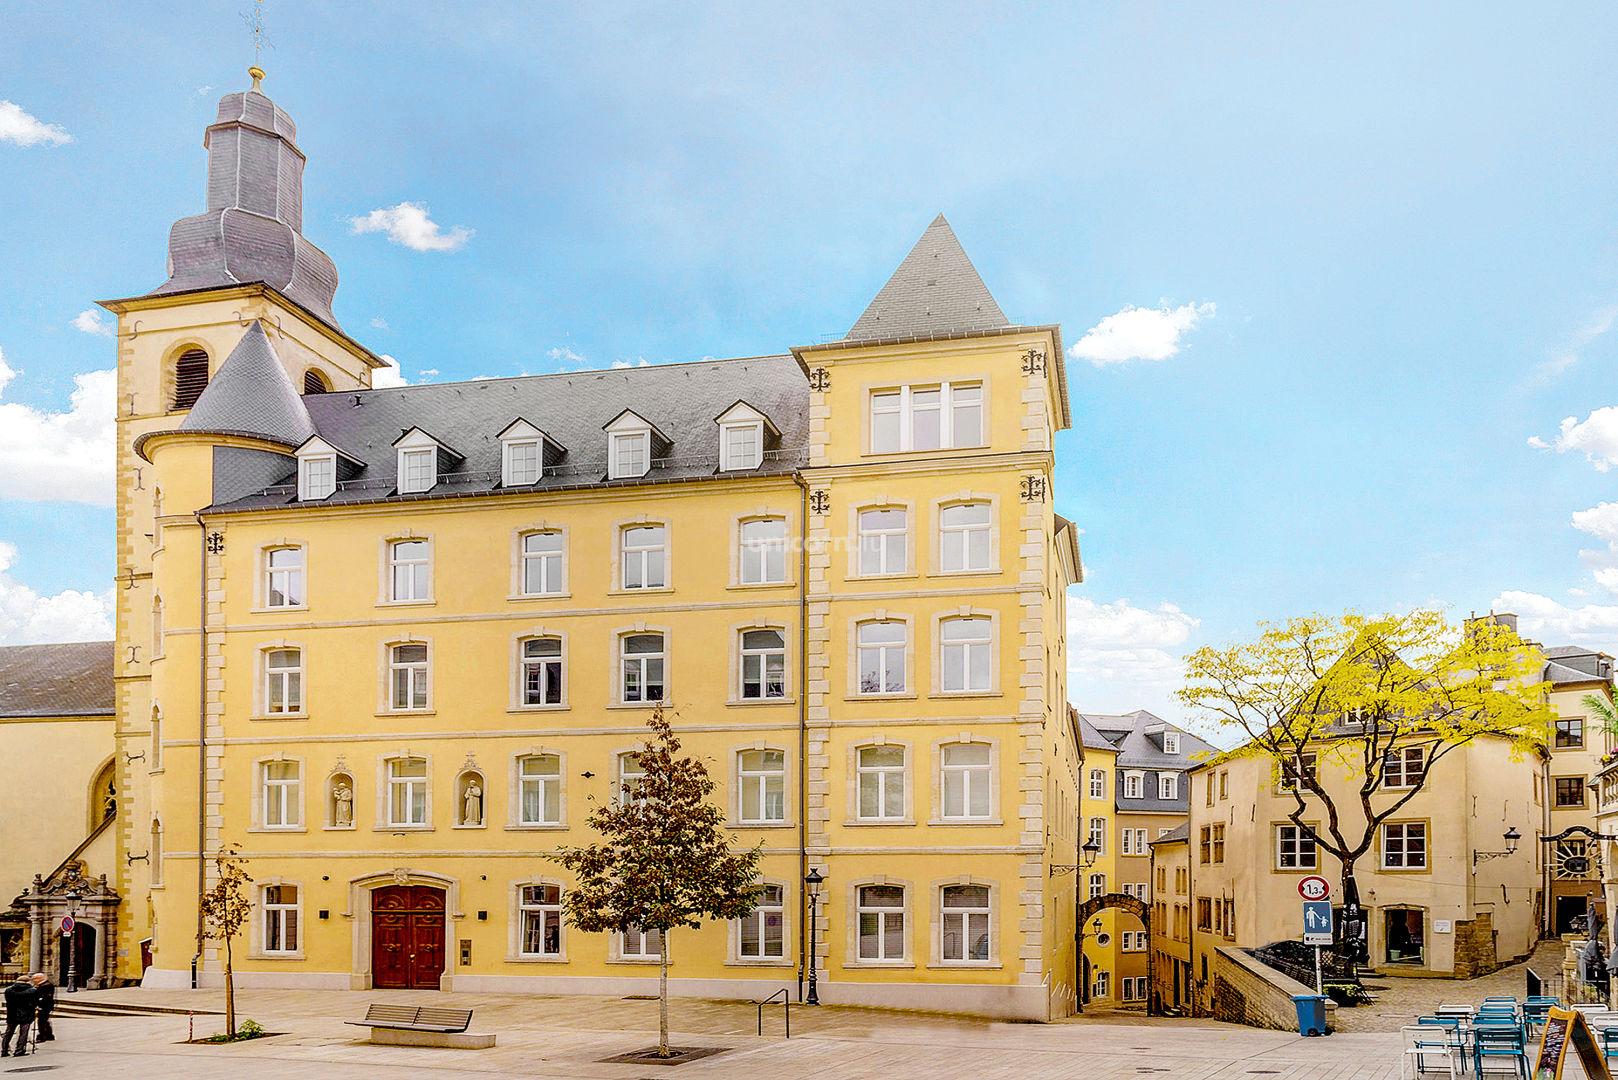  LE CLOITRE DE SAINT - FRANCOIS - Real estate project in Luxembourg